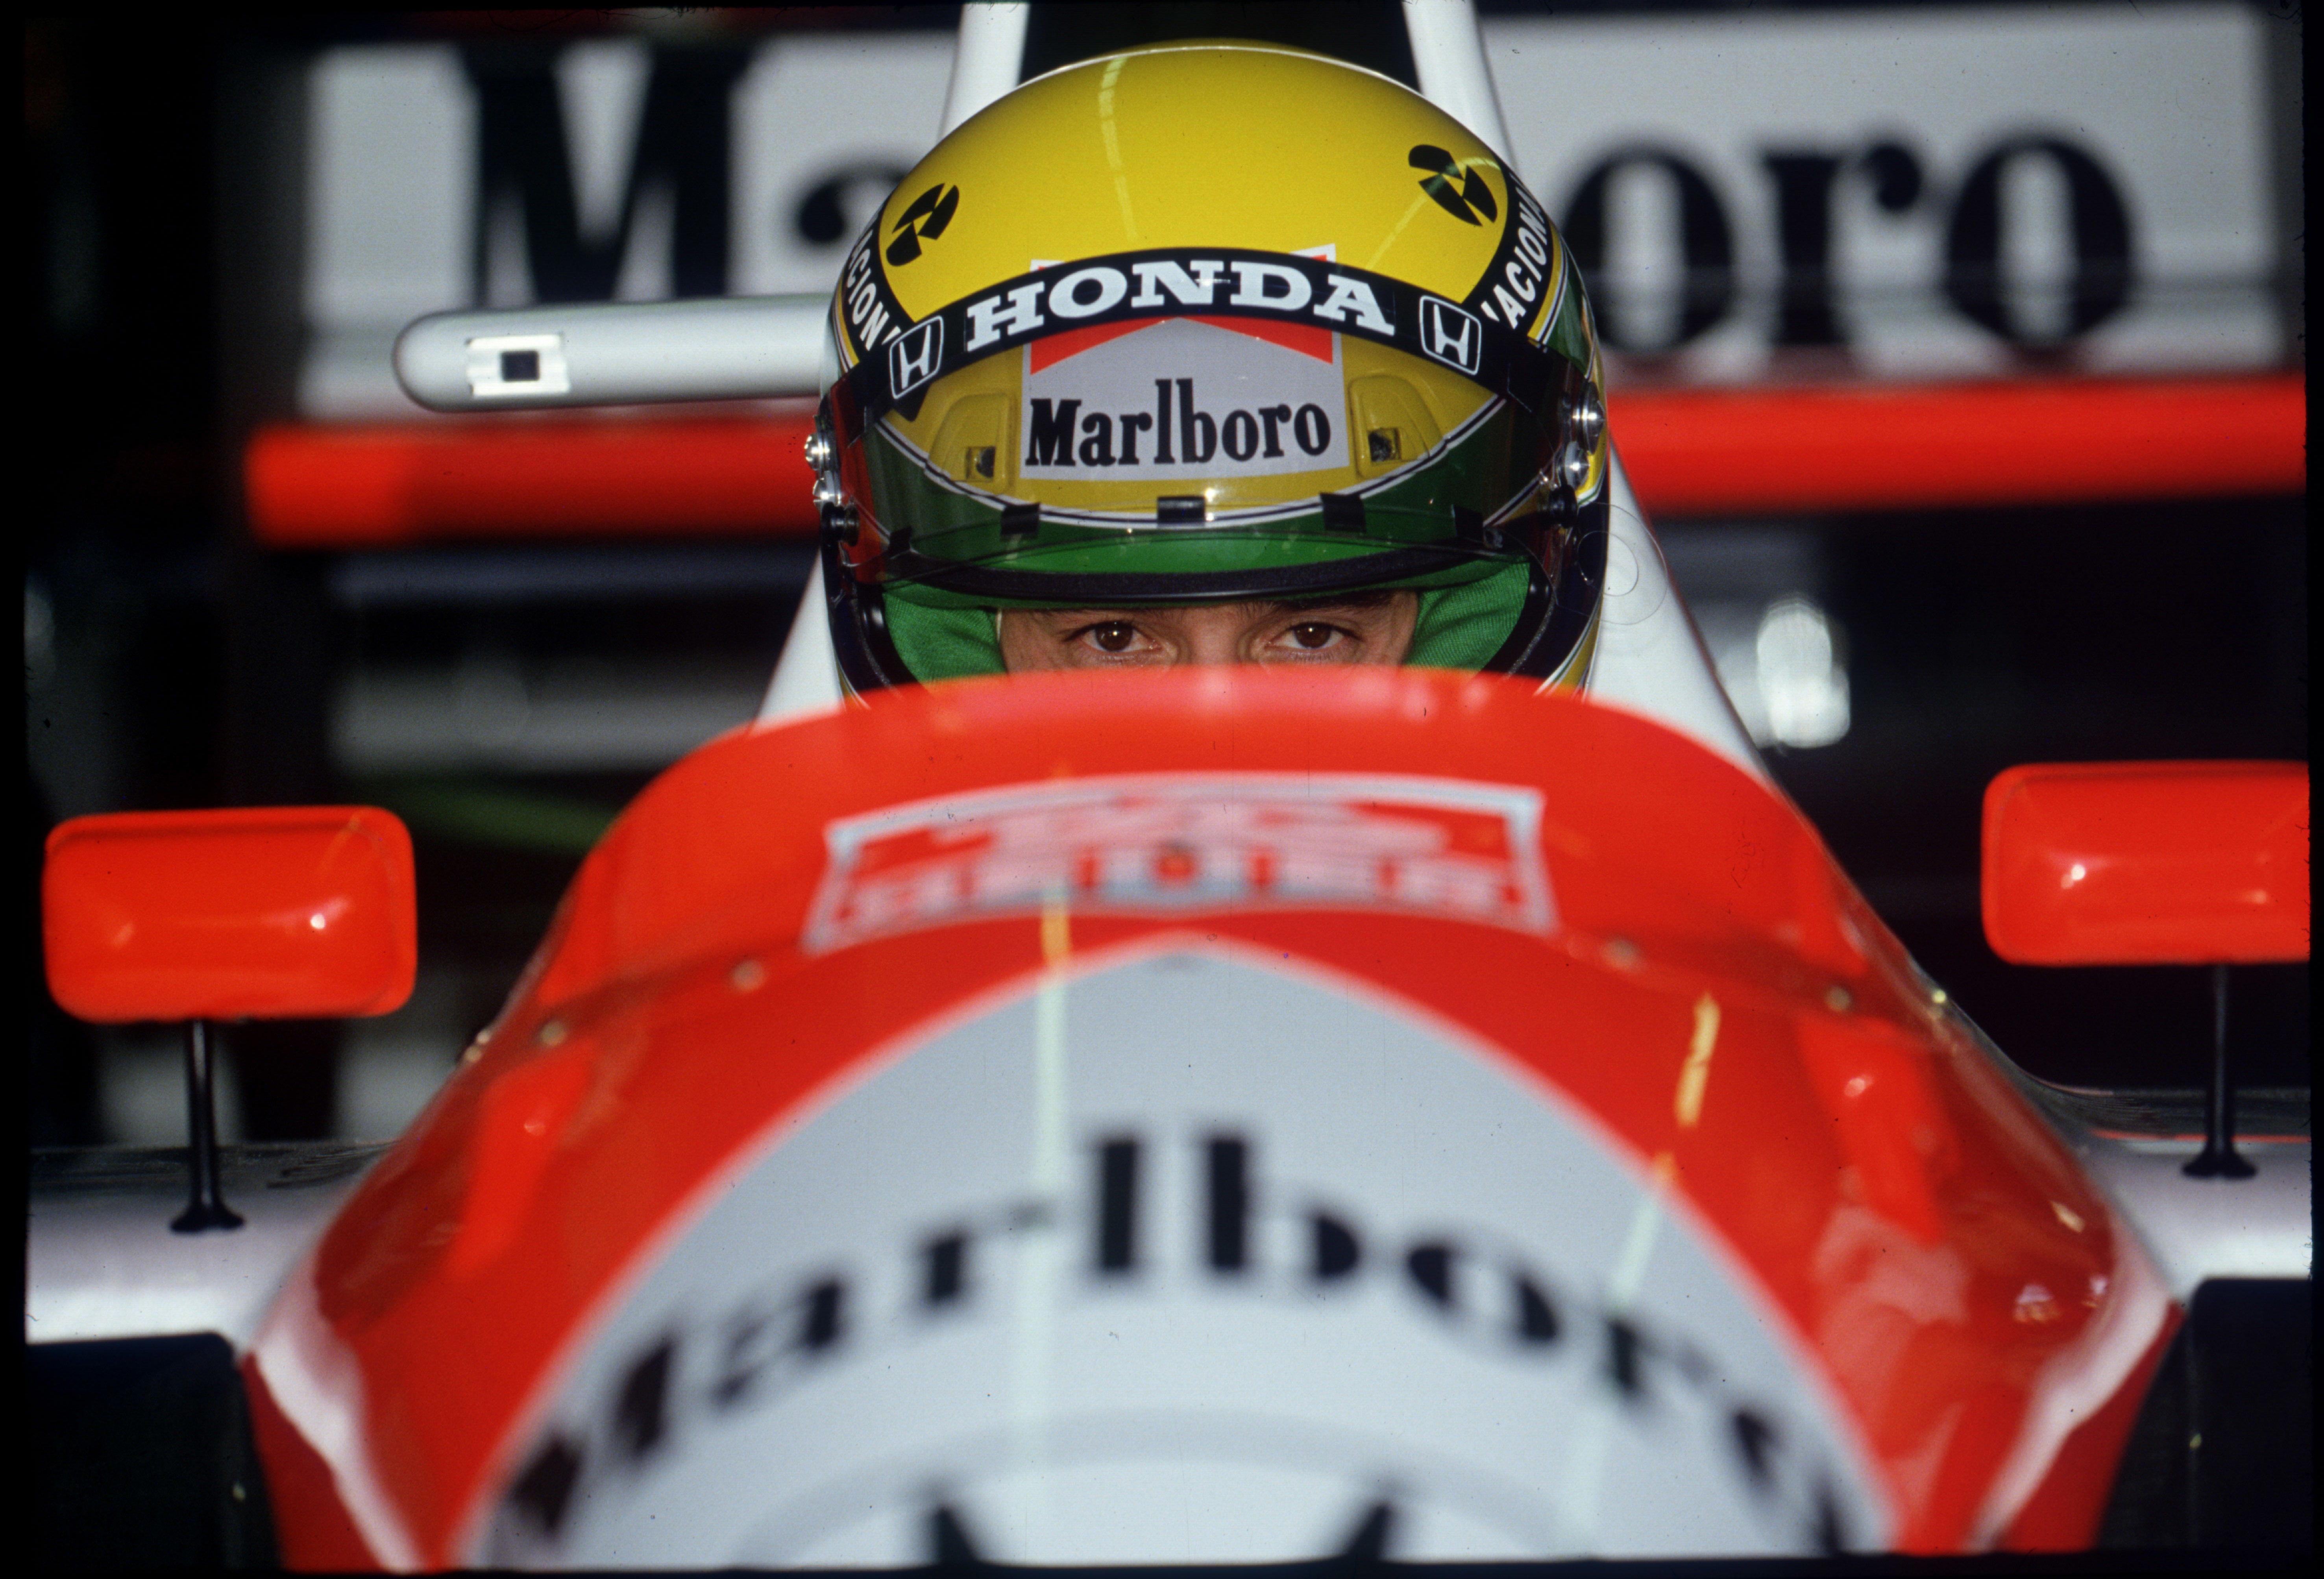 red and white Marlboro F1 vehicle, McLaren, USA, Phoenix, Ayrton Senna